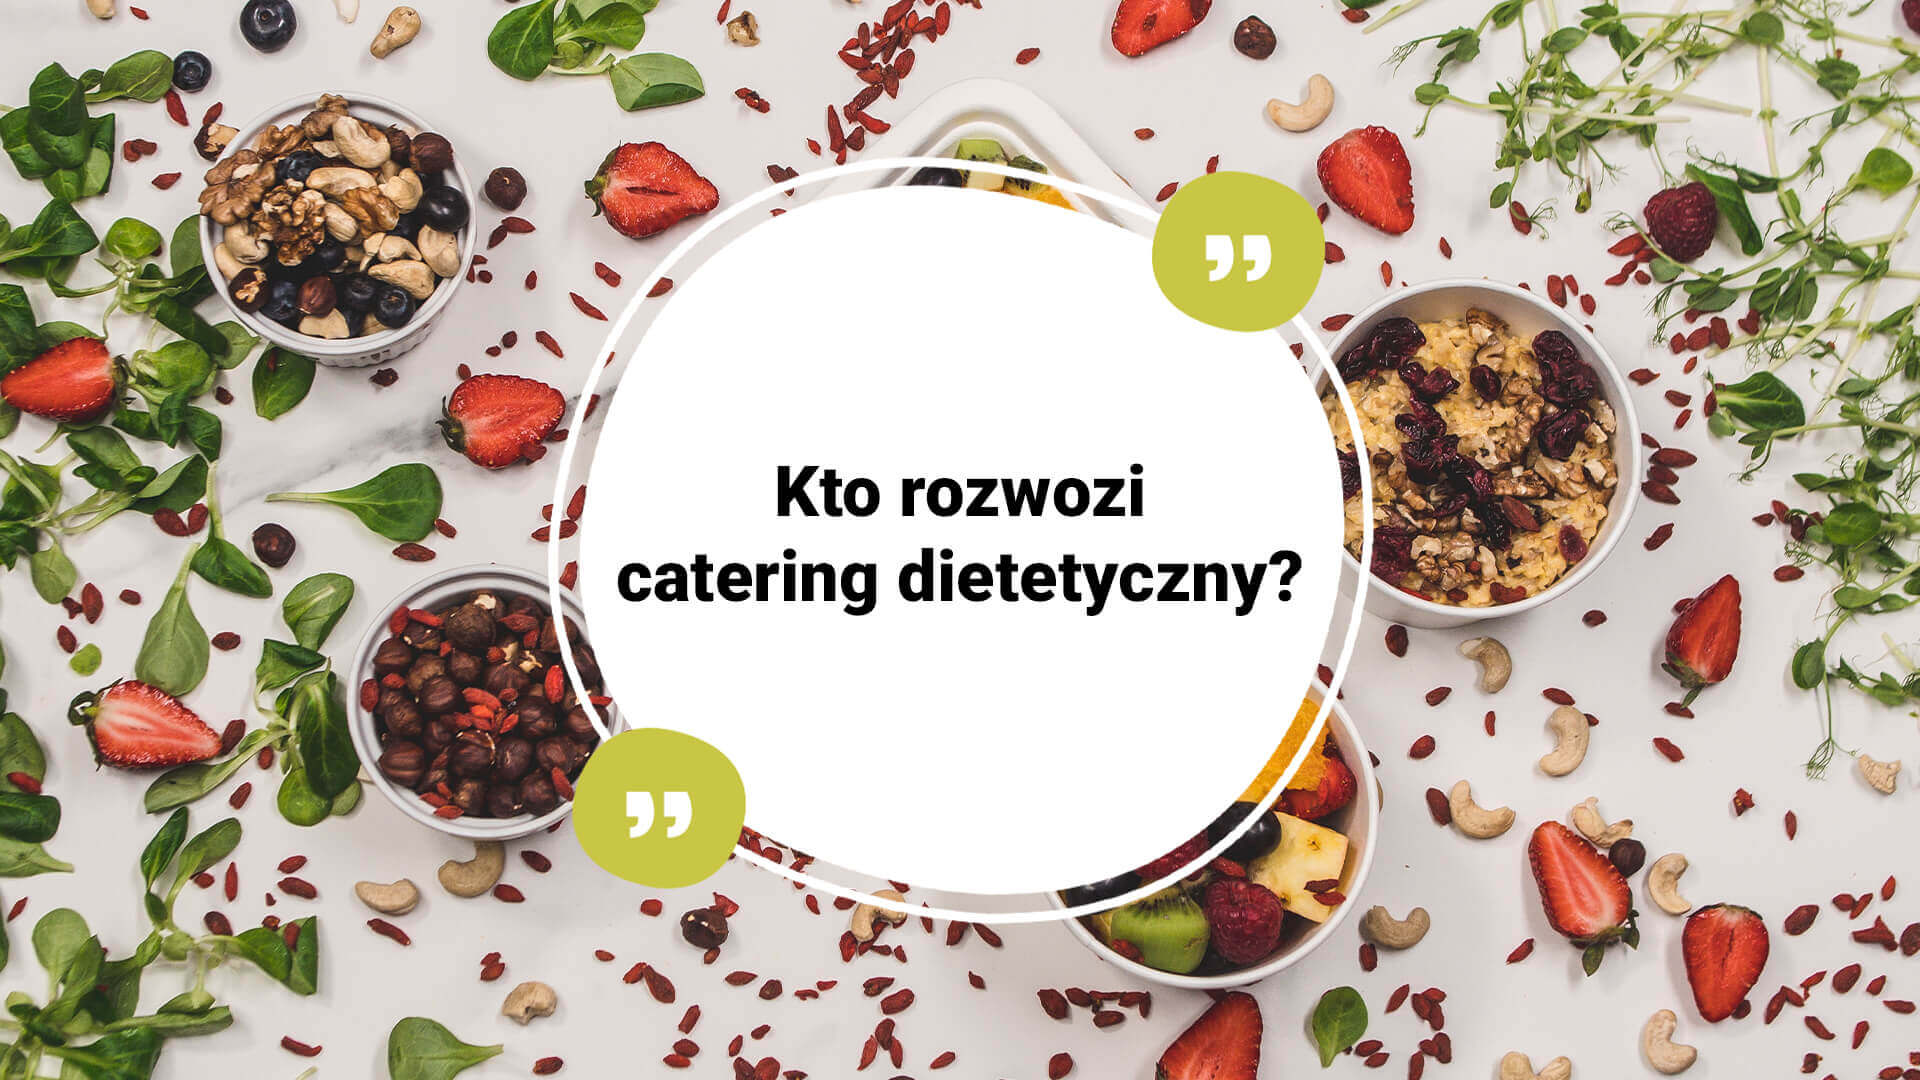 Kto rozwozi catering dietetyczny?